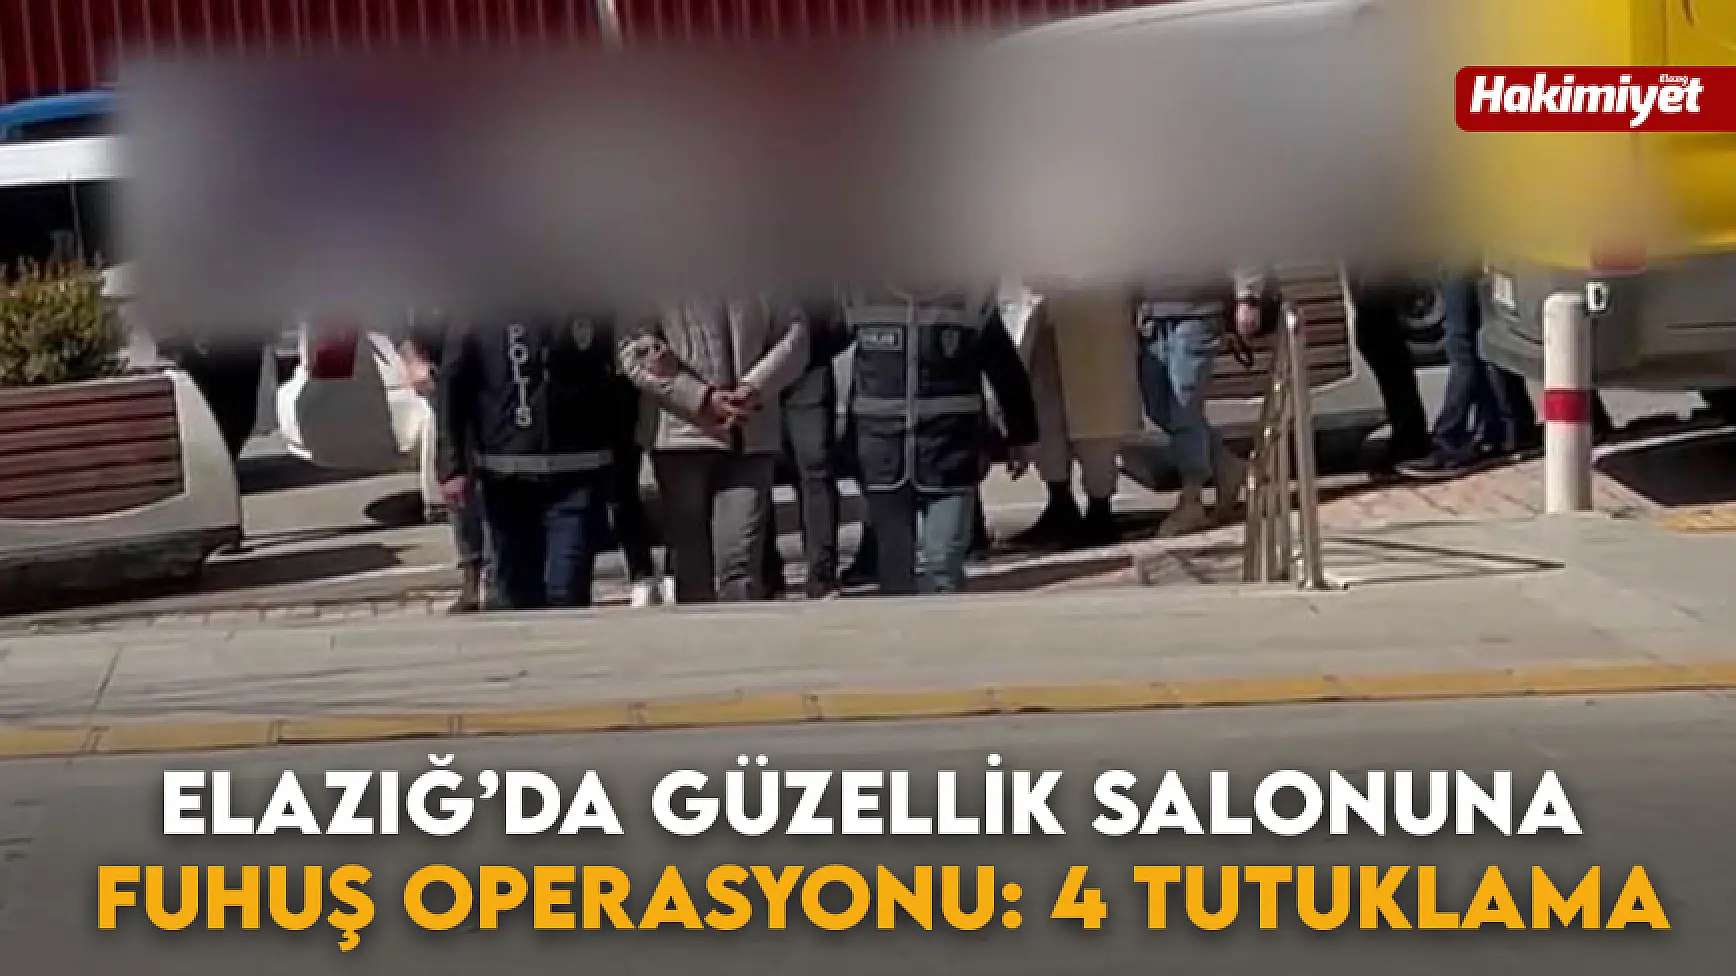 Elazığ’da Güzellik Salonuna Fuhuş Operasyonu: 4 Tutuklama